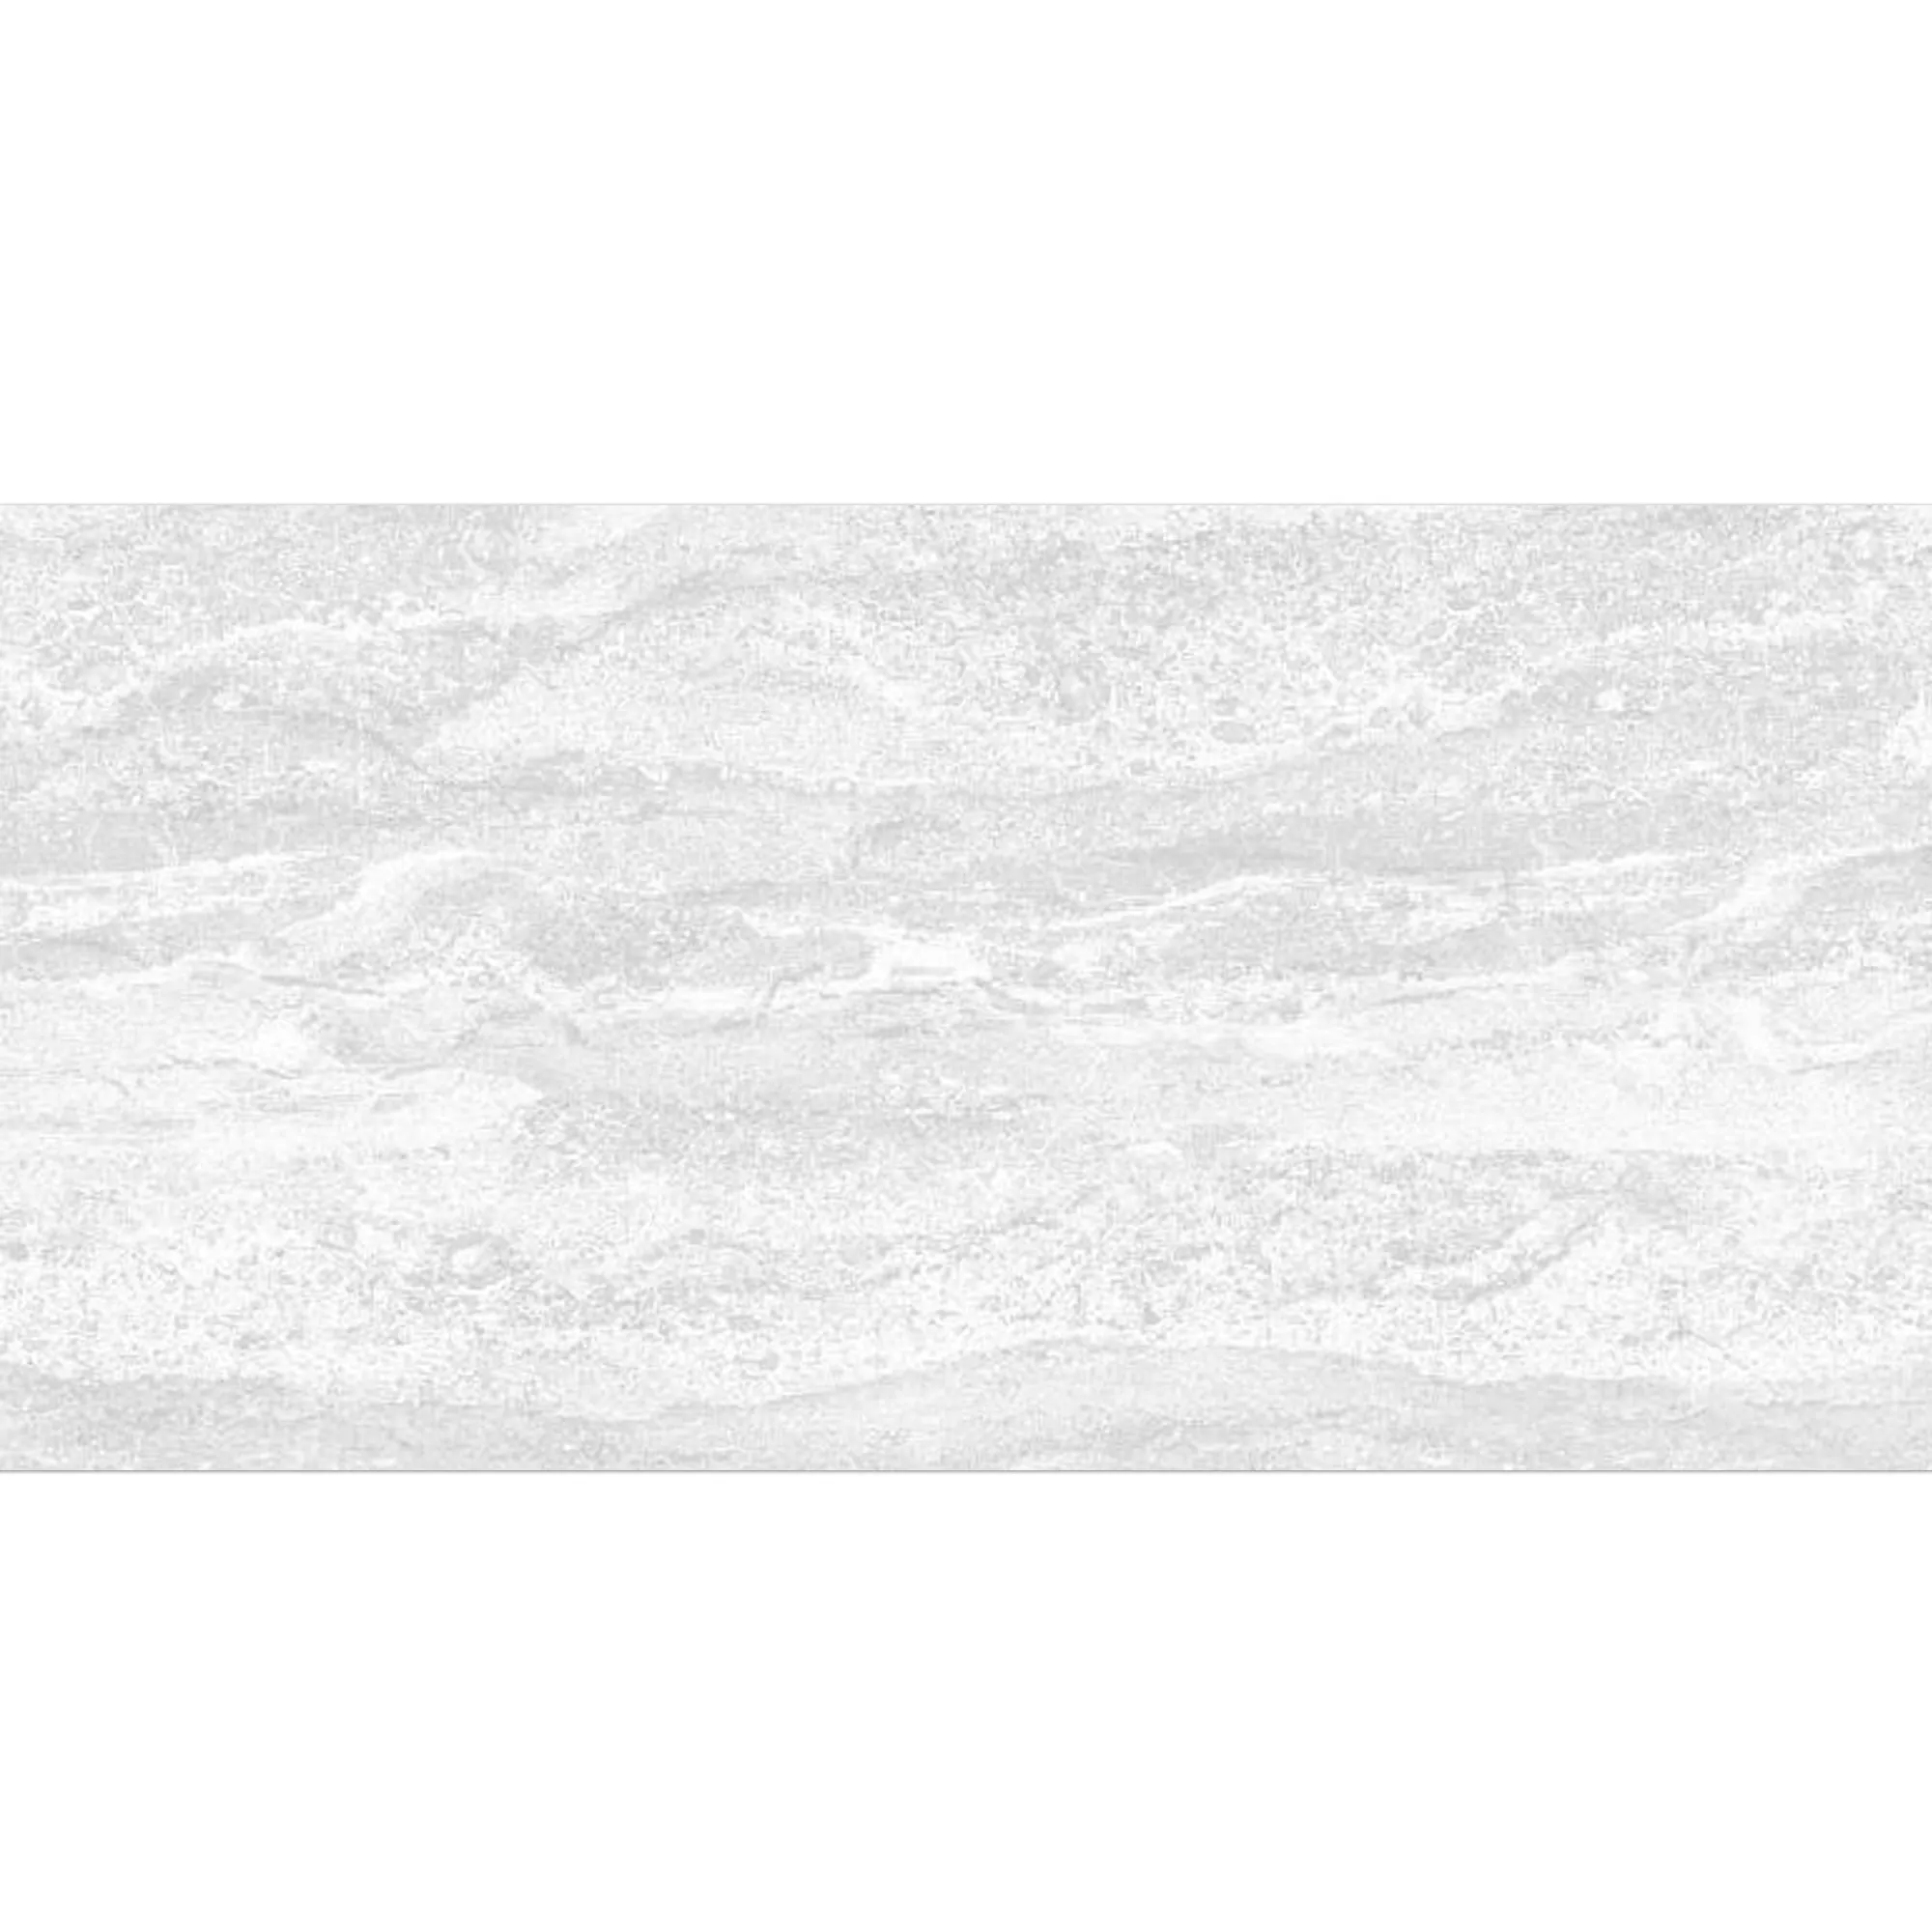 Obkladačka Bellinzona Bílá Strukturovaný 30x60cm